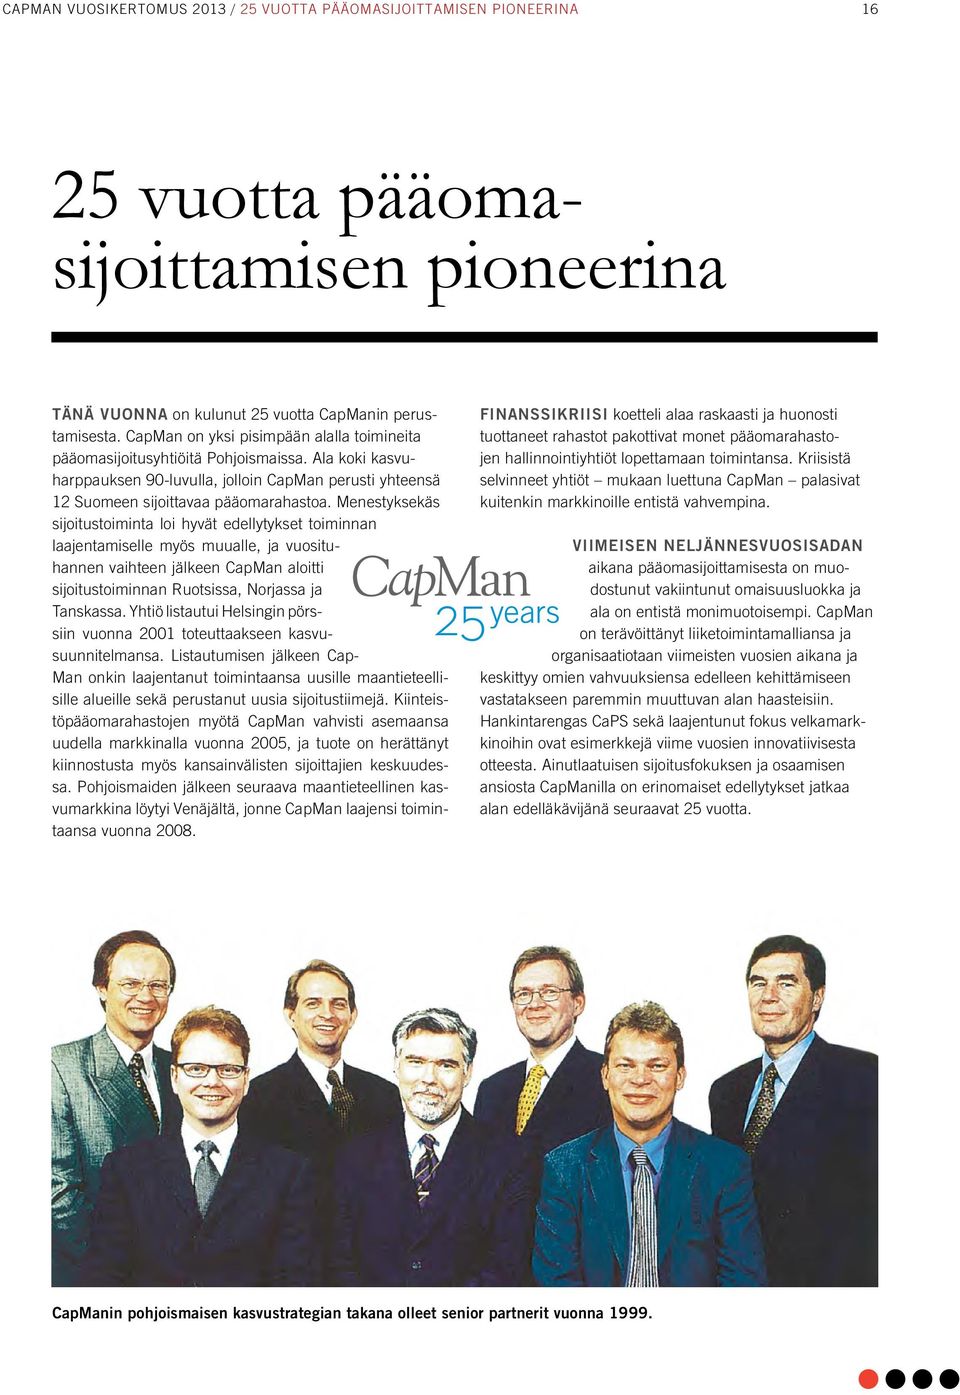 Menestyksekäs sijoitustoiminta loi hyvät edellytykset toiminnan laajentamiselle myös muualle, ja vuosituhannen vaihteen jälkeen CapMan aloitti sijoitustoiminnan Ruotsissa, Norjassa ja Tanskassa.